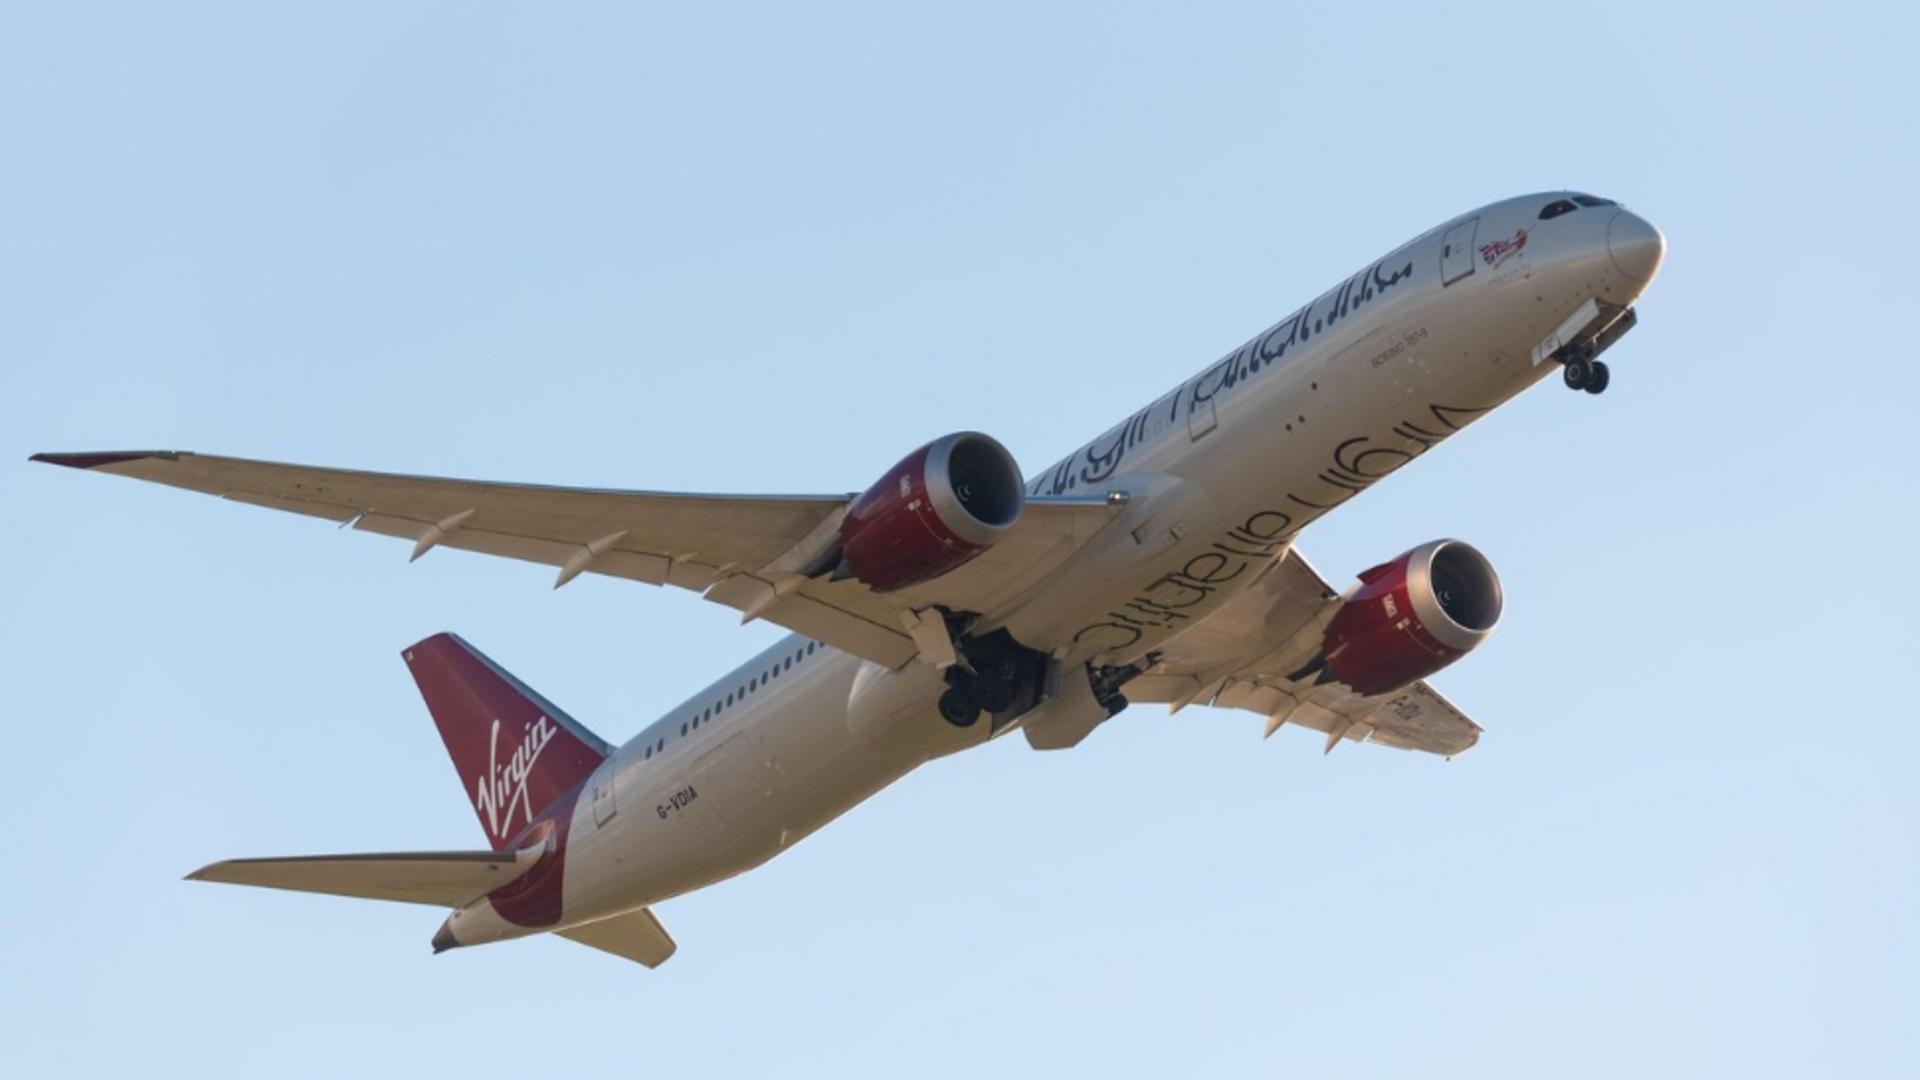 Un zbor al companiei Virgin Atlantic, anulat de urgență! Mai multe șuruburi de fixare la o aripă lipseau/ Profimedia